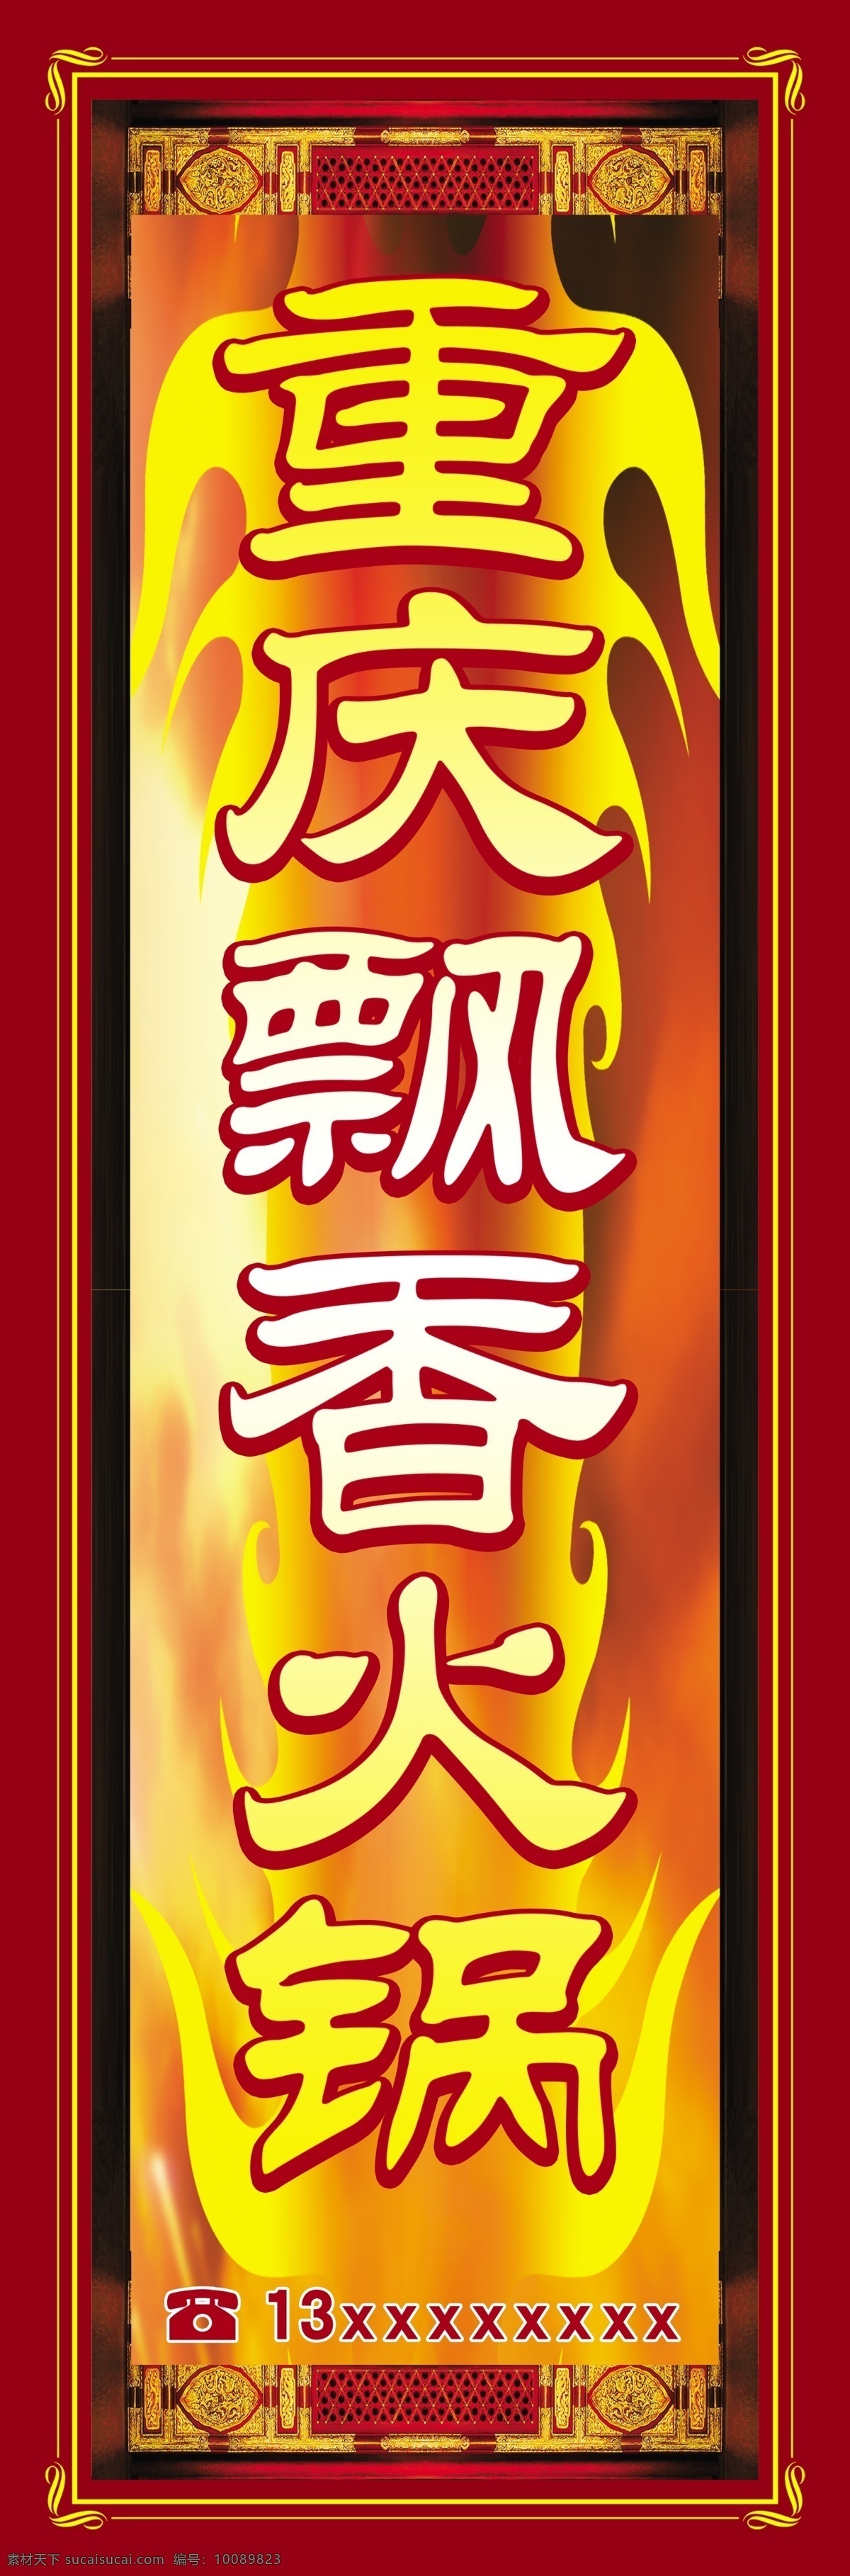 重庆 飘香 火锅 灯箱 火焰 分层素材 招牌 古典风格 国内广告设计 广告设计模板 源文件